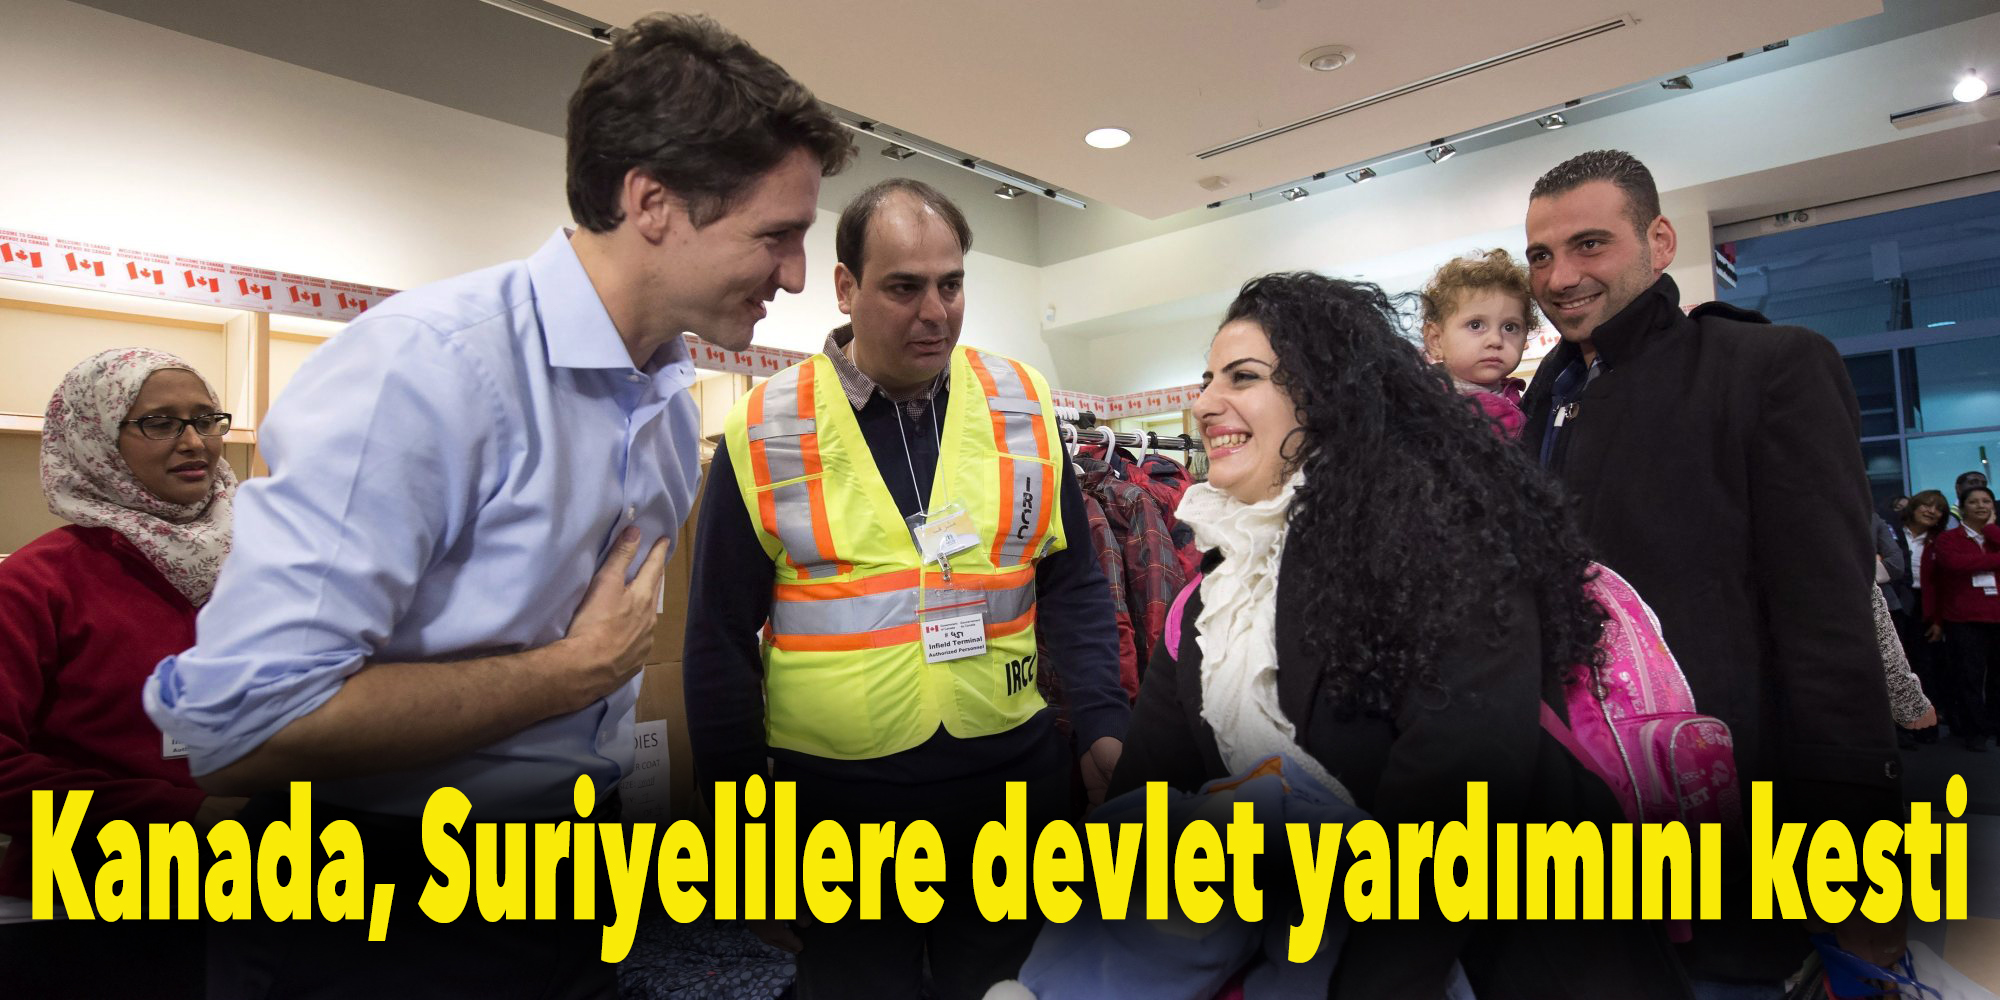 Kanada’da Suriyeli mültecilere devlet yardımı durdu